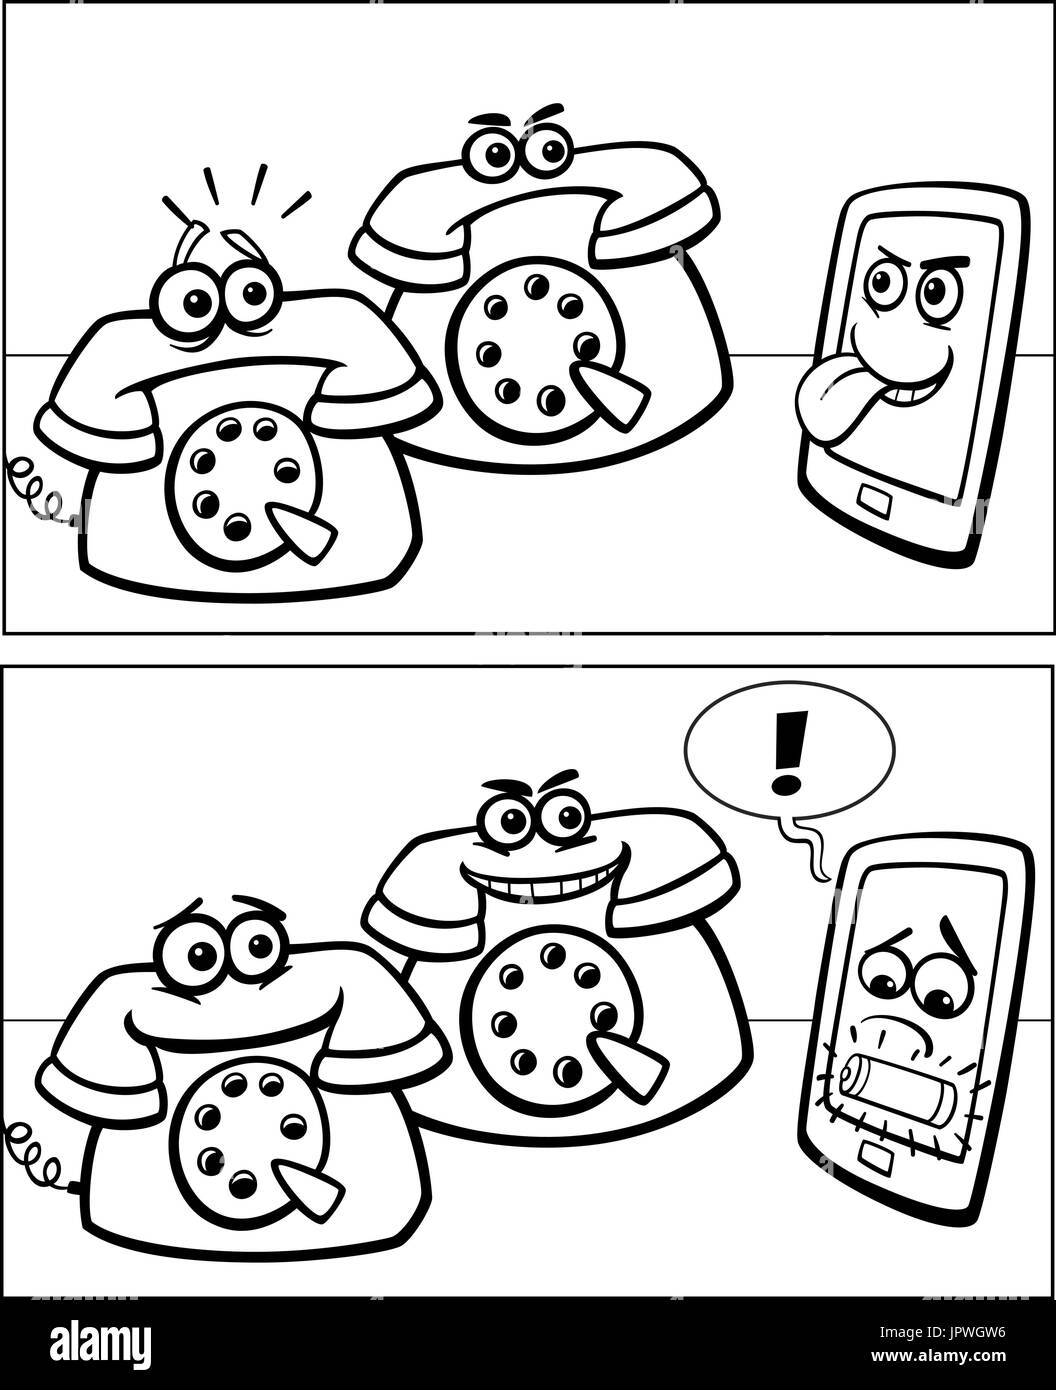 Schwarz Weiss Cartoon Illustration Von Smartphone Und Retro Telefone Comic Geschichte Stock Vektorgrafik Alamy